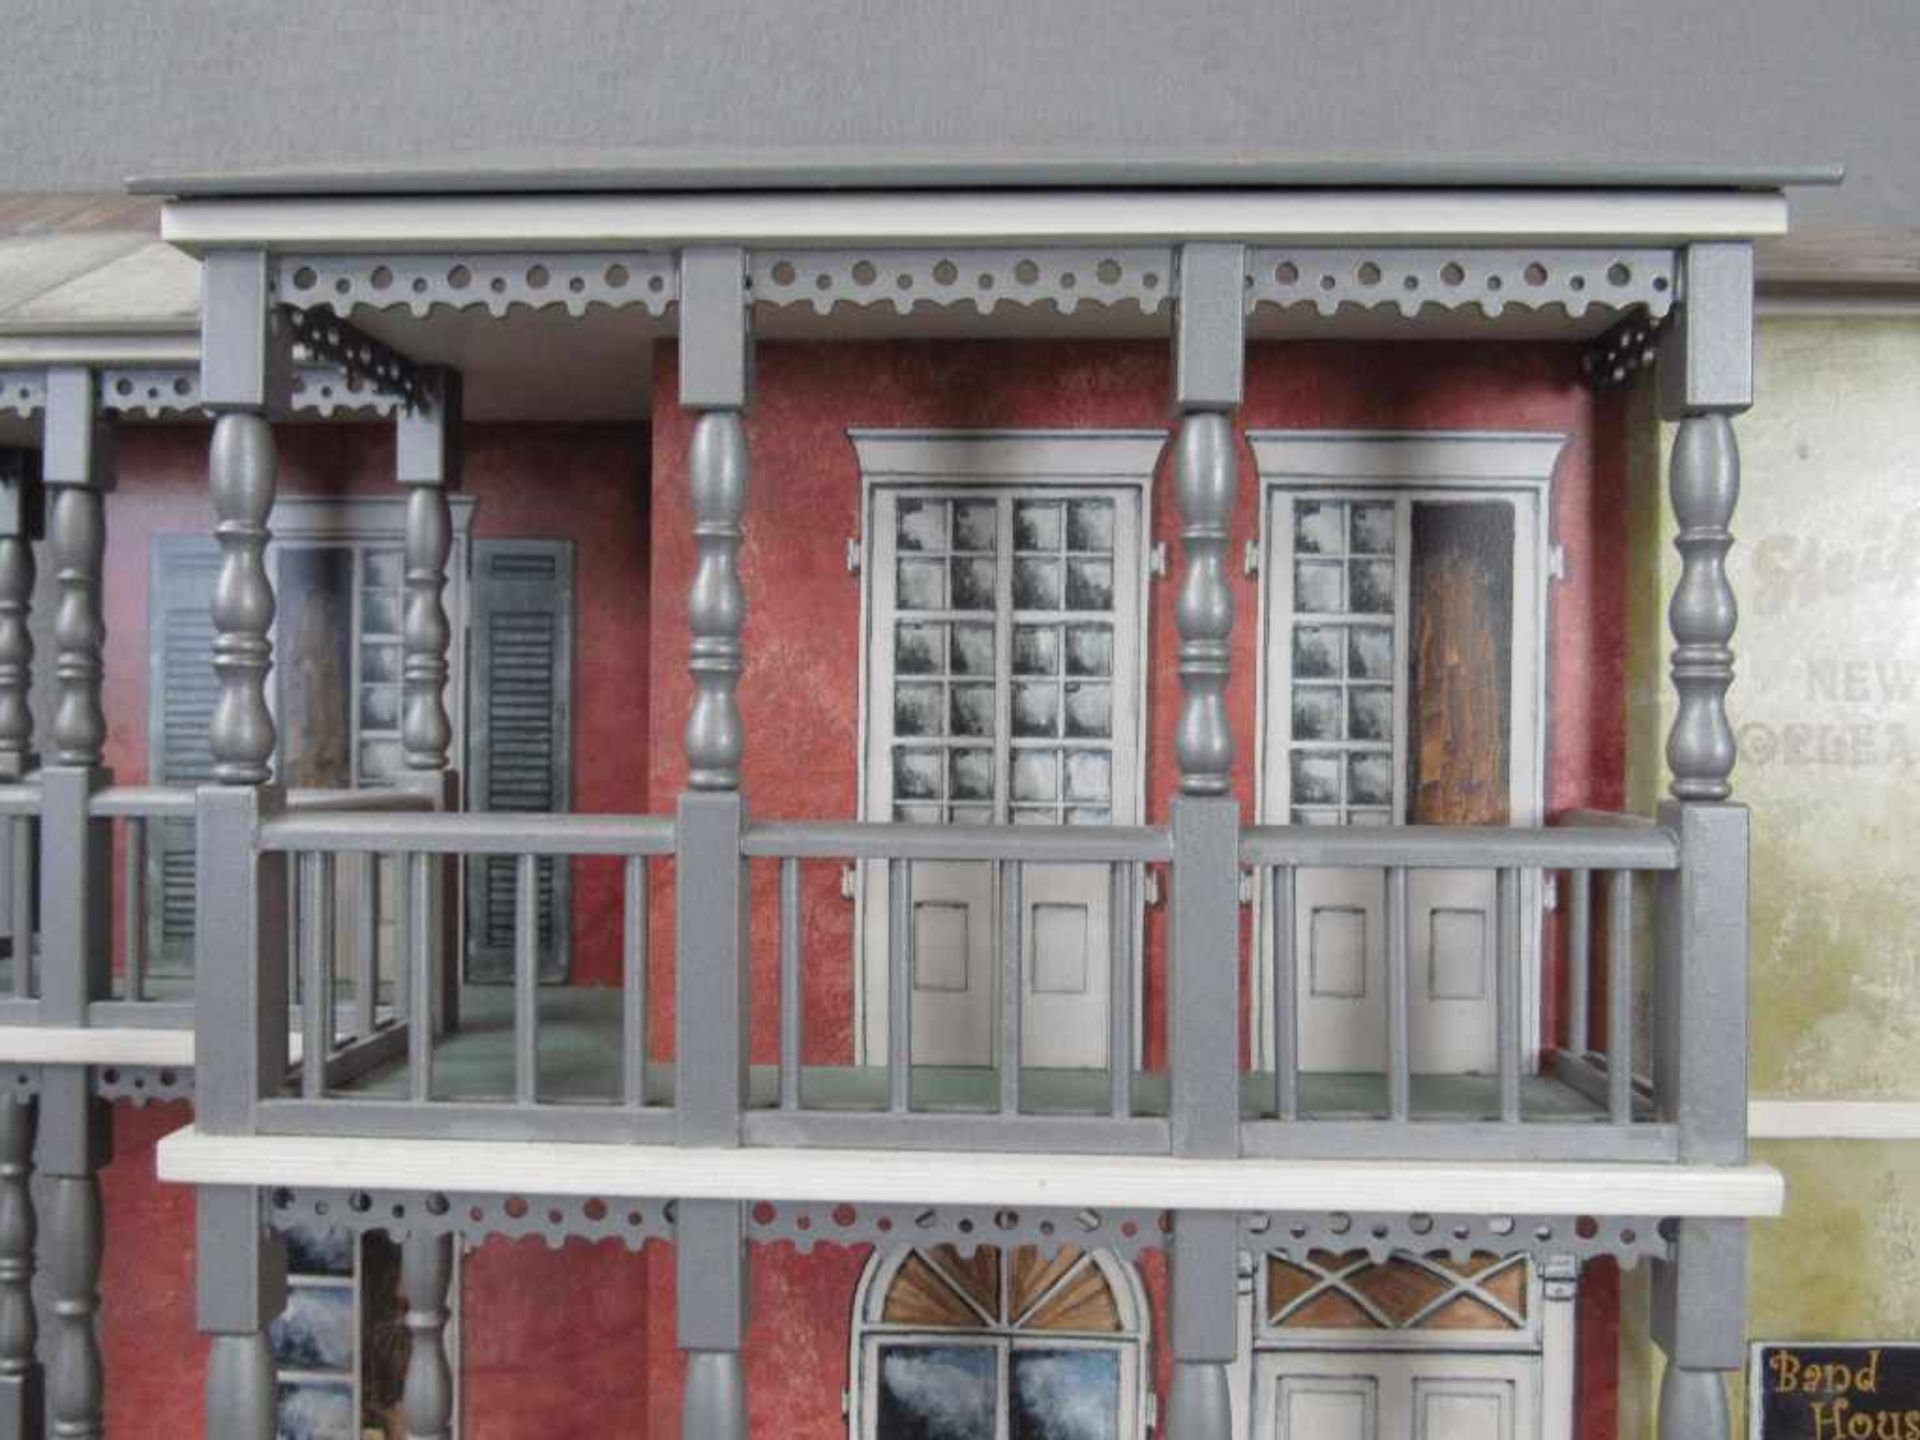 Steiff großes Diorama Display mit Spieluhr von 2001 limited edition Nr. 0675/1000 leicht bespielt - Bild 6 aus 11